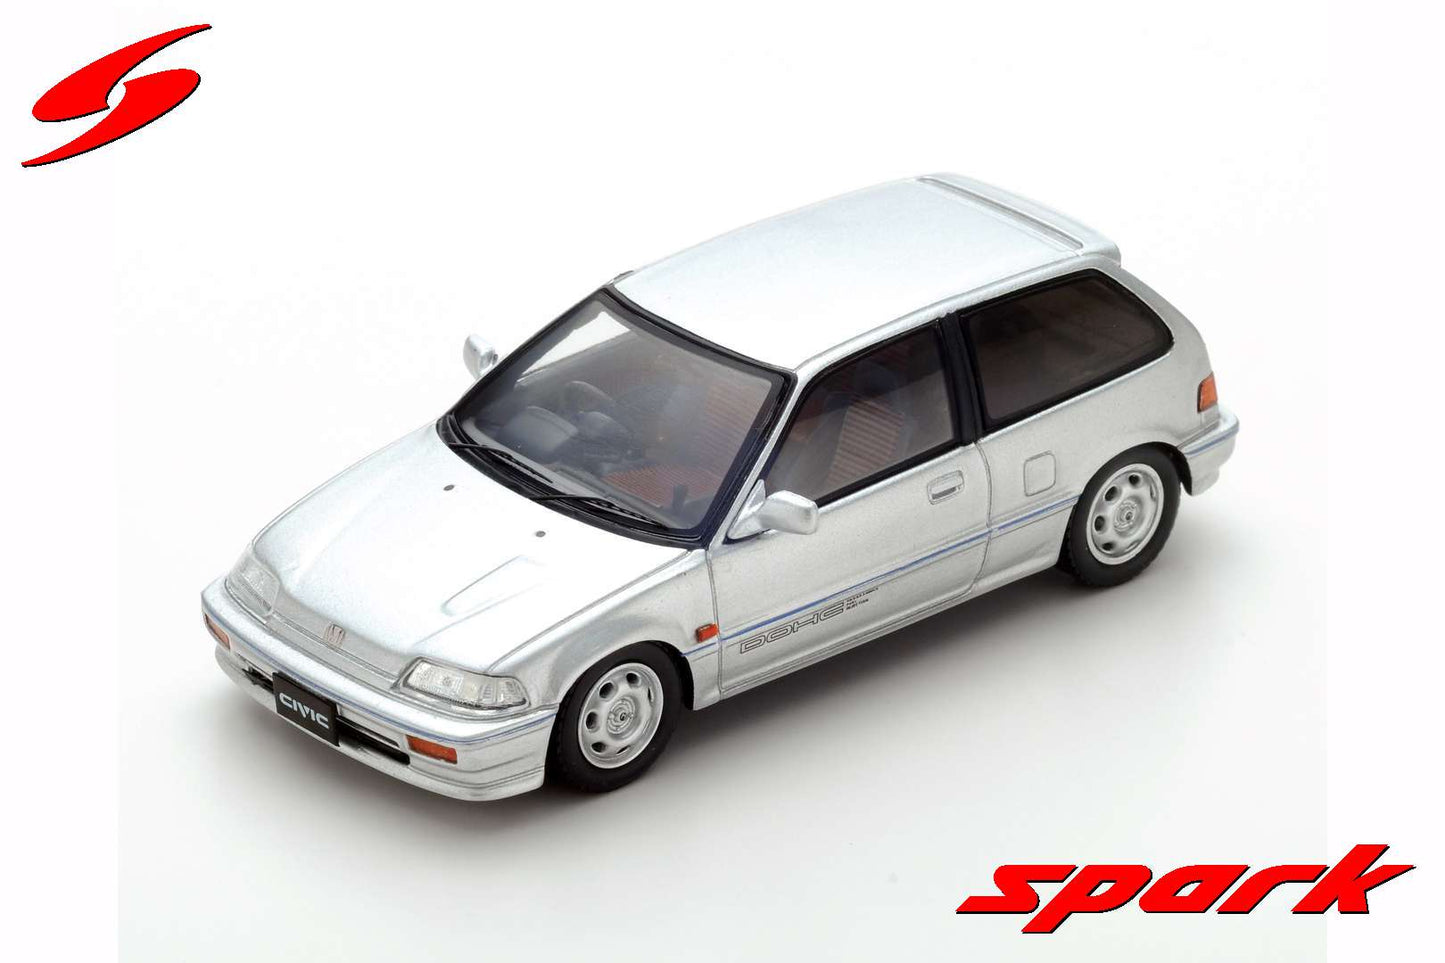 Spark 1:43 Honda Civic EF3 Si 1987 S5450